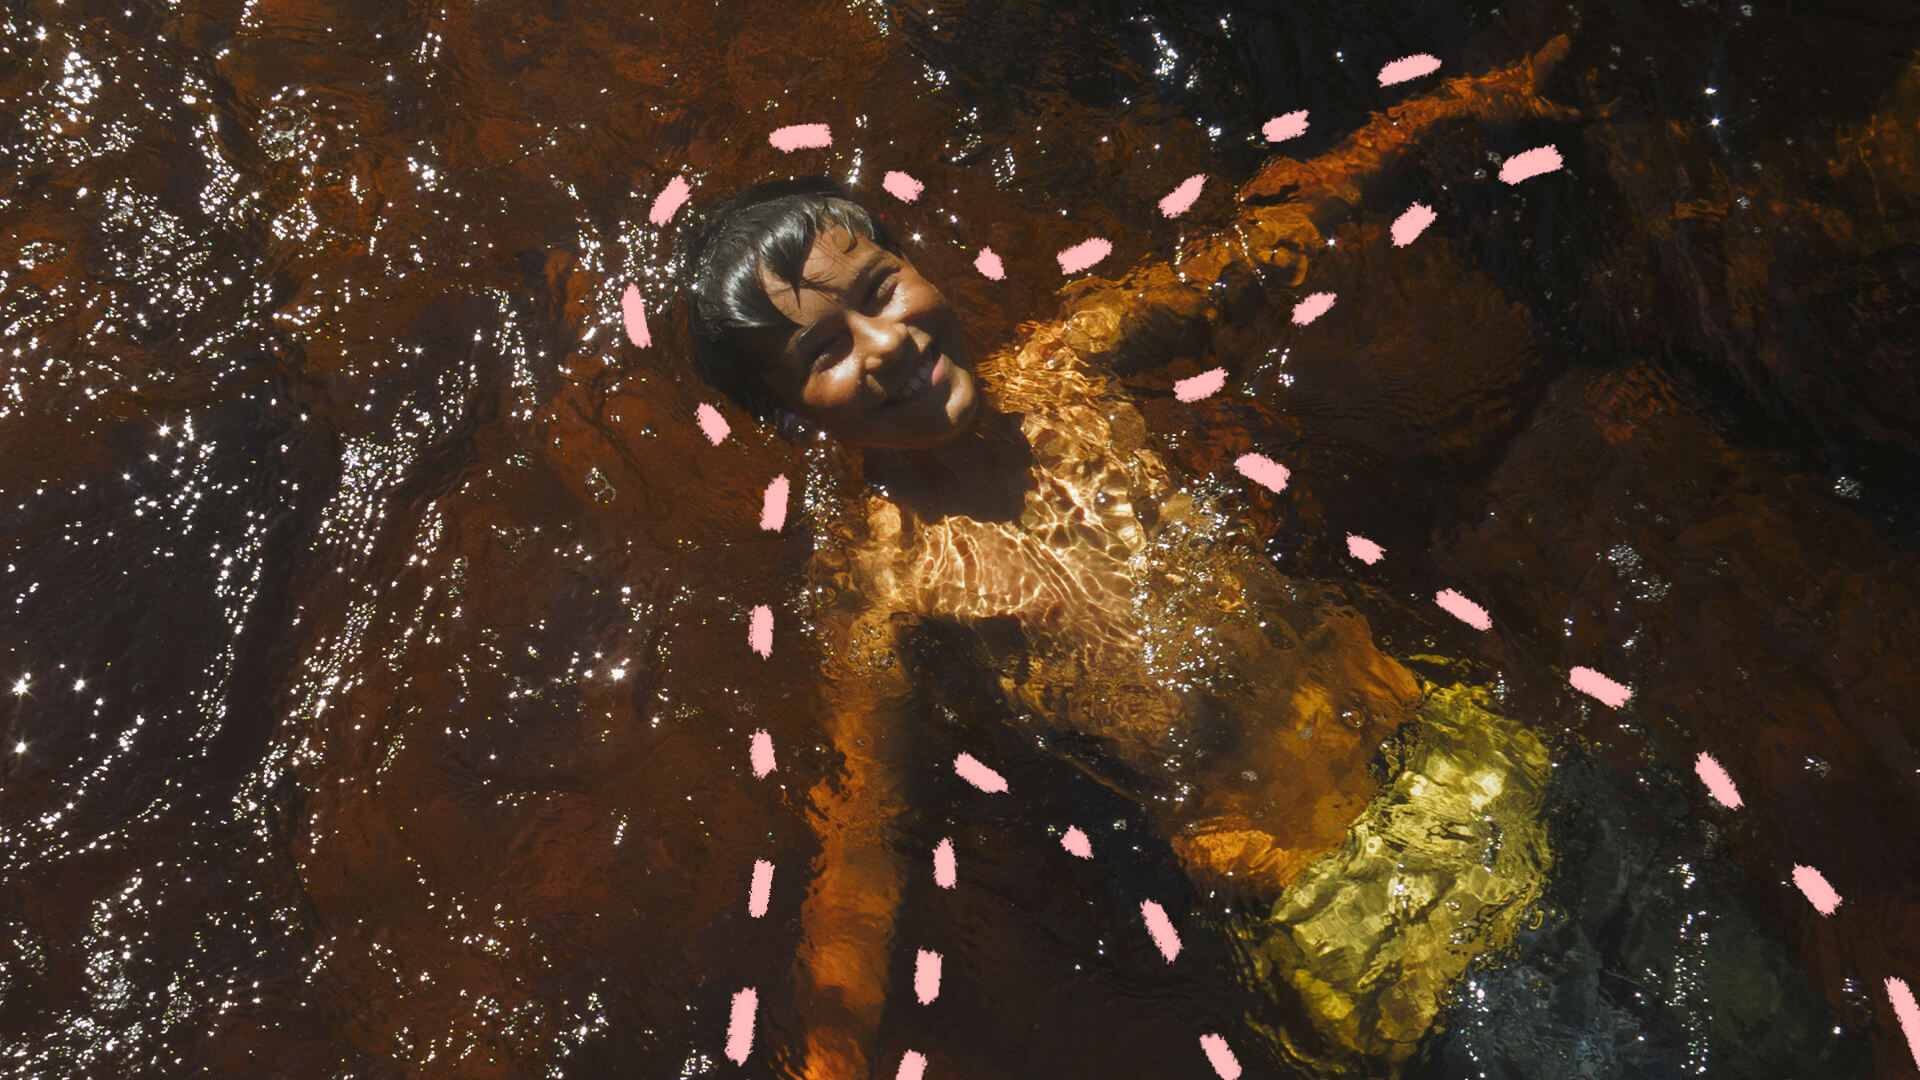 Na foto, uma criança de pele escura aparece sorrindo enquanto brinca mergulhada em um rio. a imagem possui intervenções de rabiscos coloridos na cor rosa.